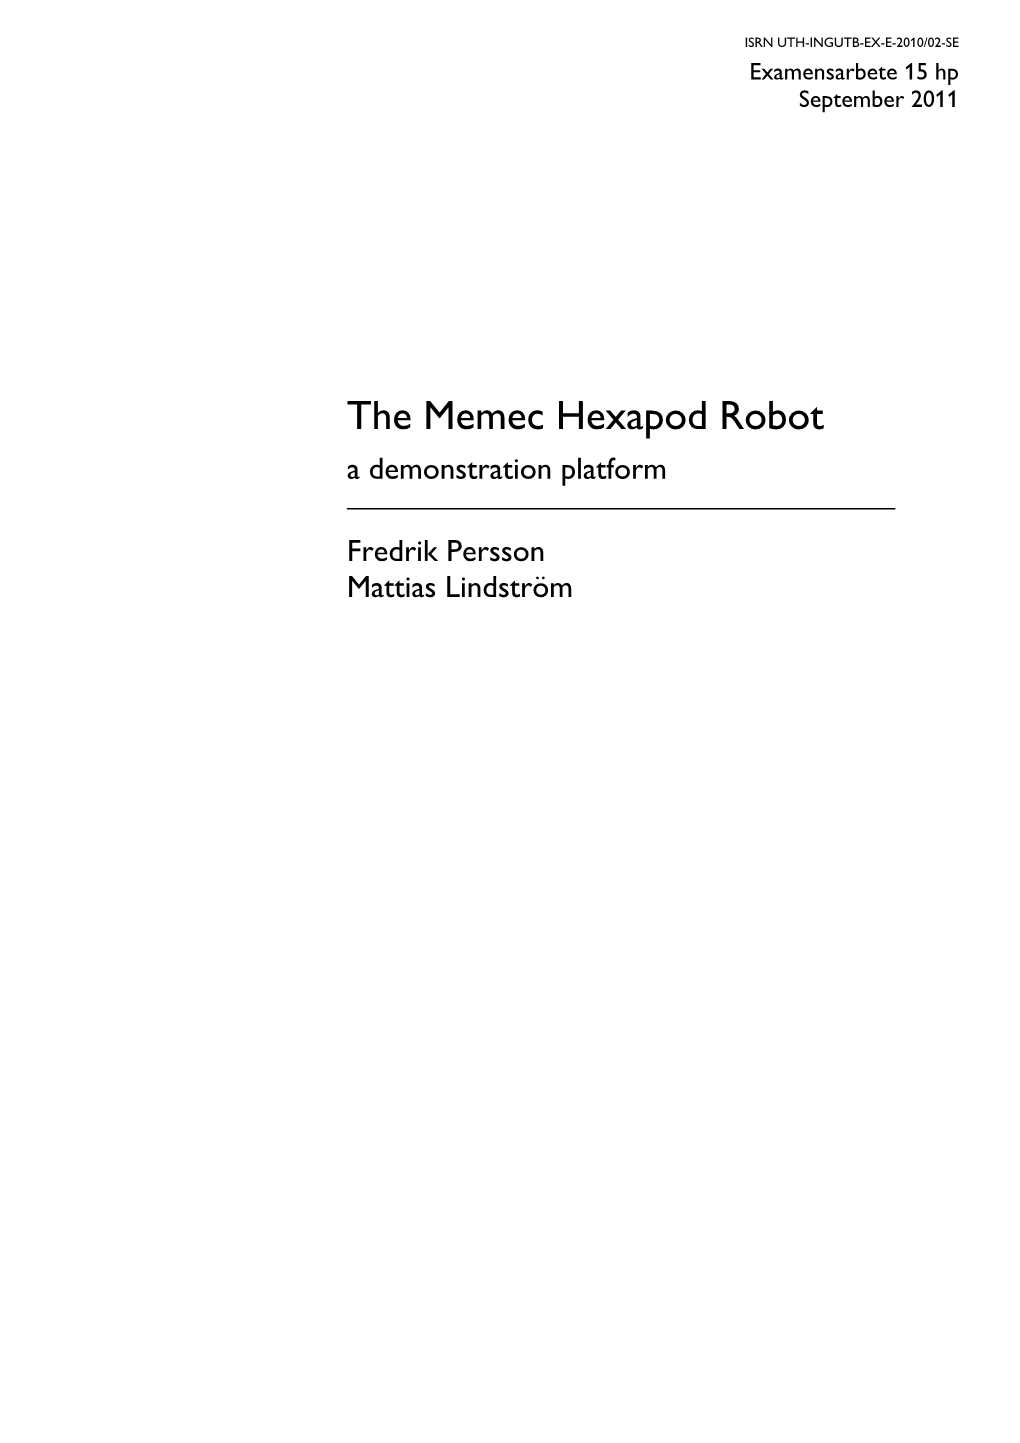 The Memec Hexapod Robot a Demonstration Platform